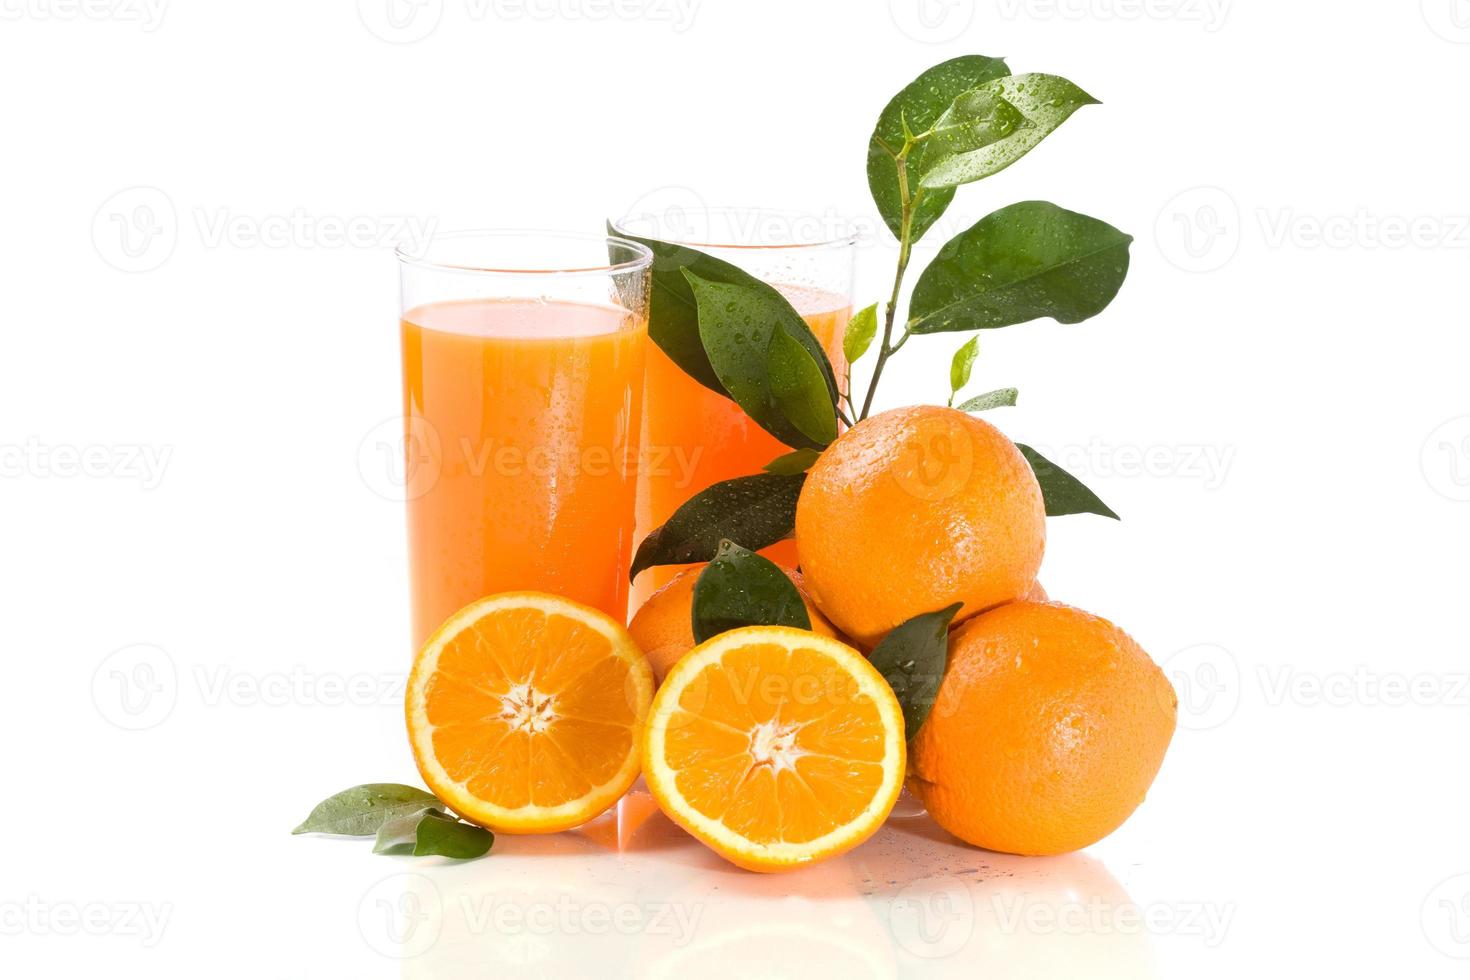 sinaasappelsap foto